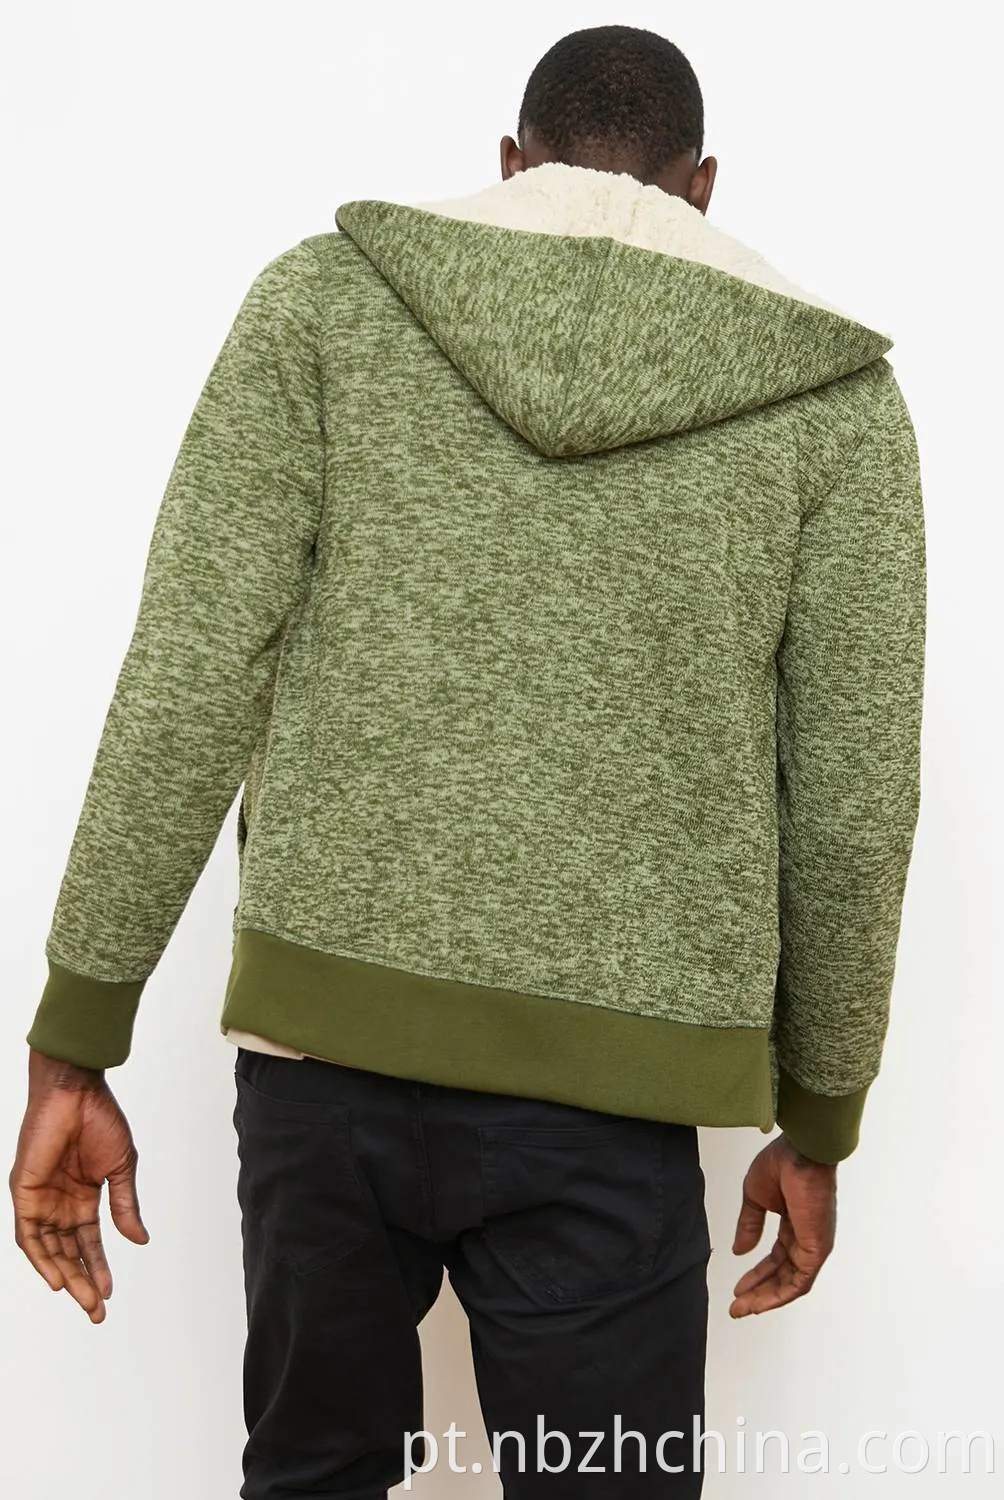 Fashion Mens Zipper Sweatshirts Hoodies